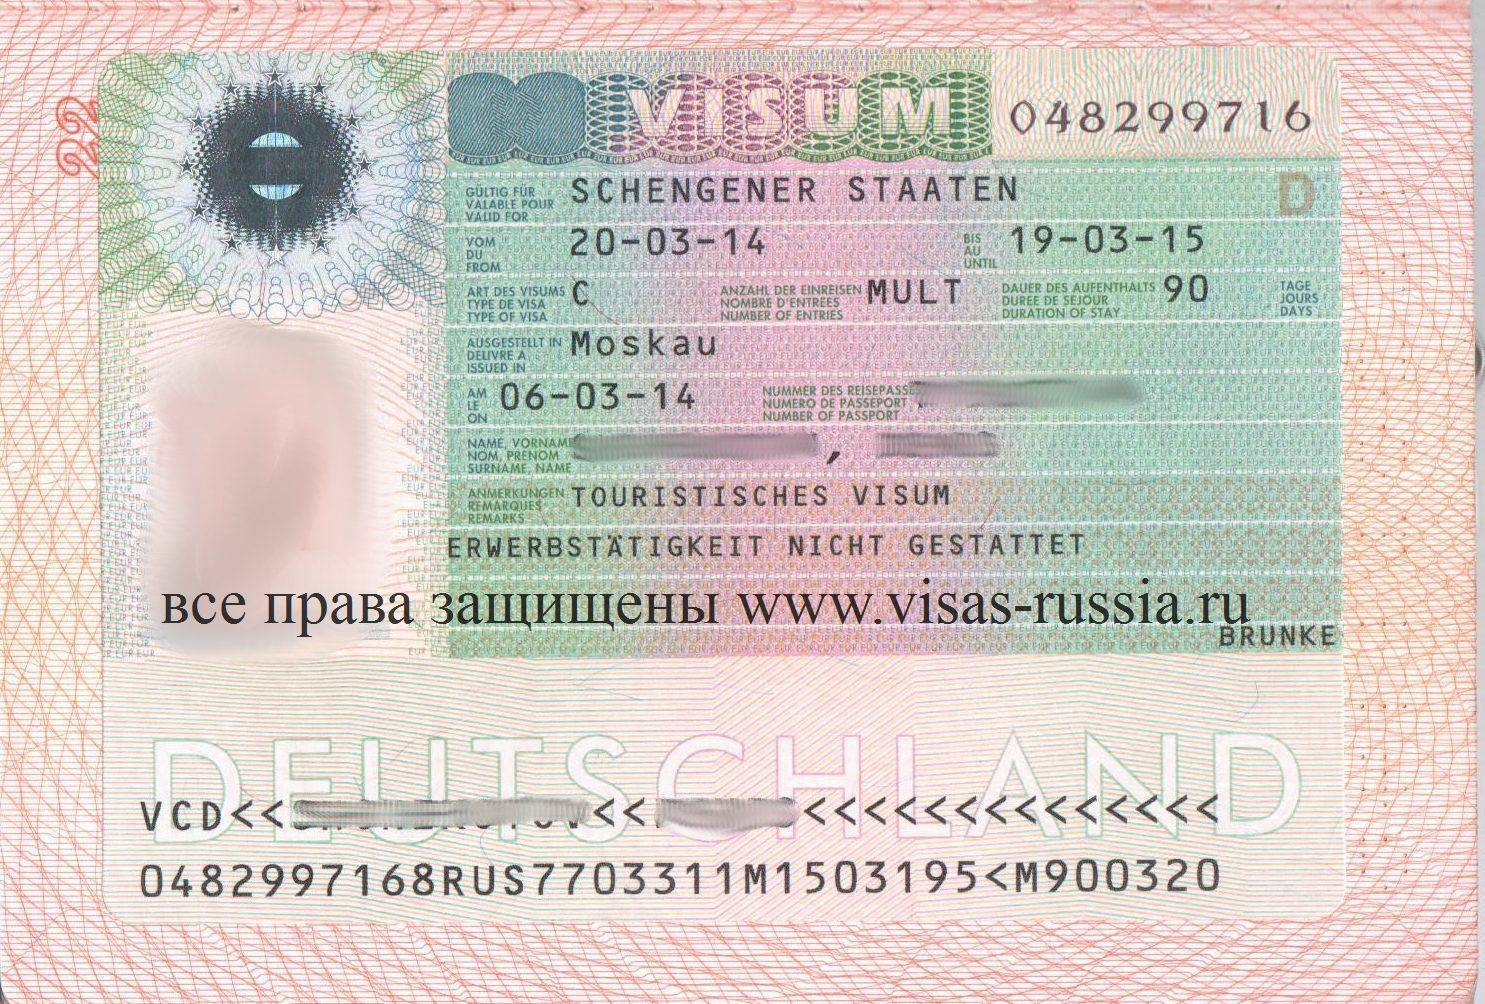 Получение визы в германию. как самостоятельно оформить немецкую визу?